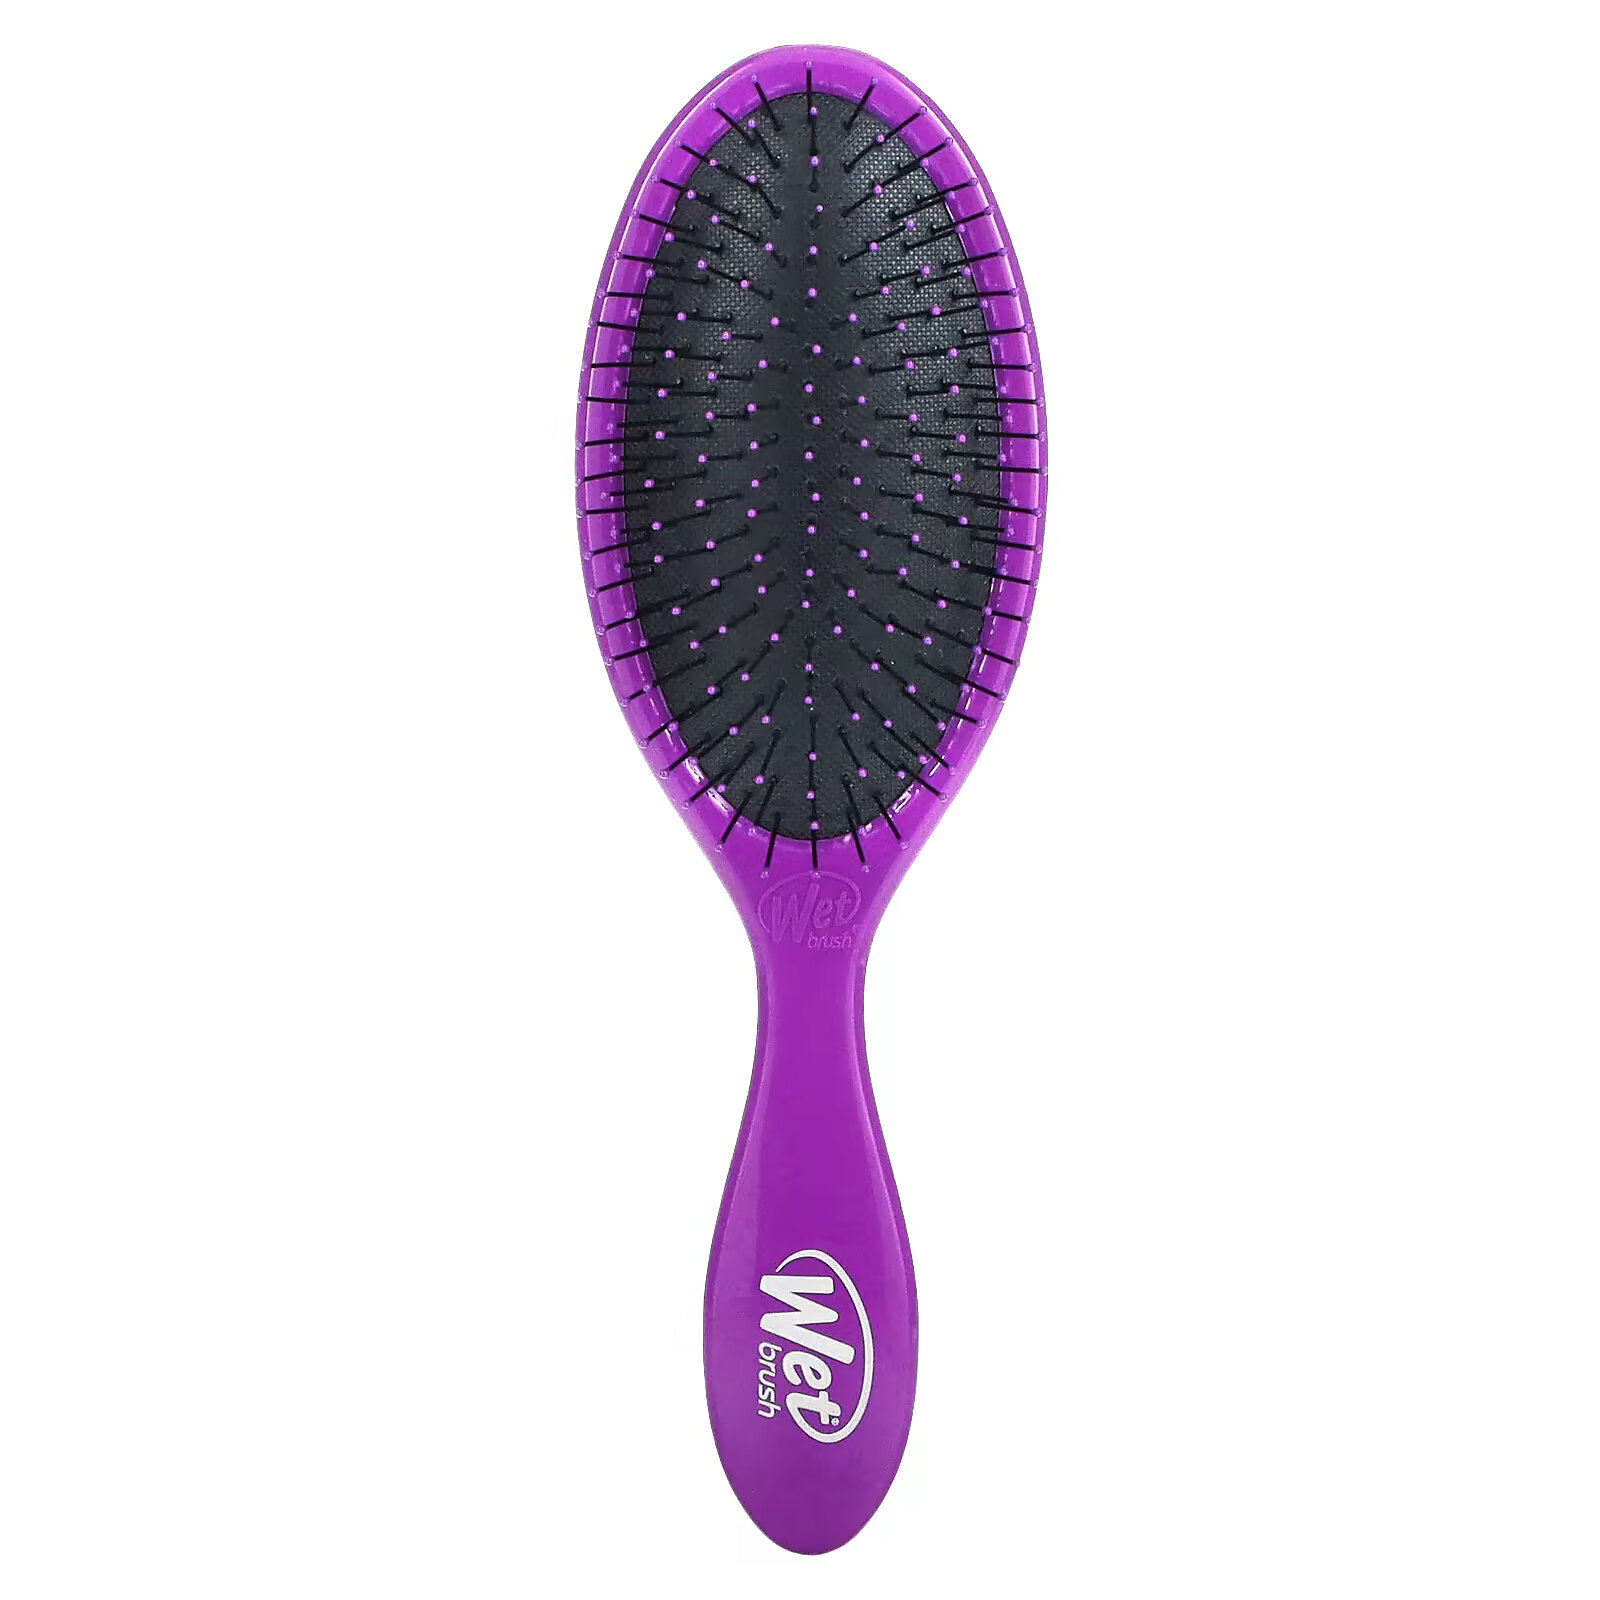 Wet Brush, Щетка для распутывания волос Original Detangler Brush, фиолетовая, 1 шт. кисти original detangler wet brush синий